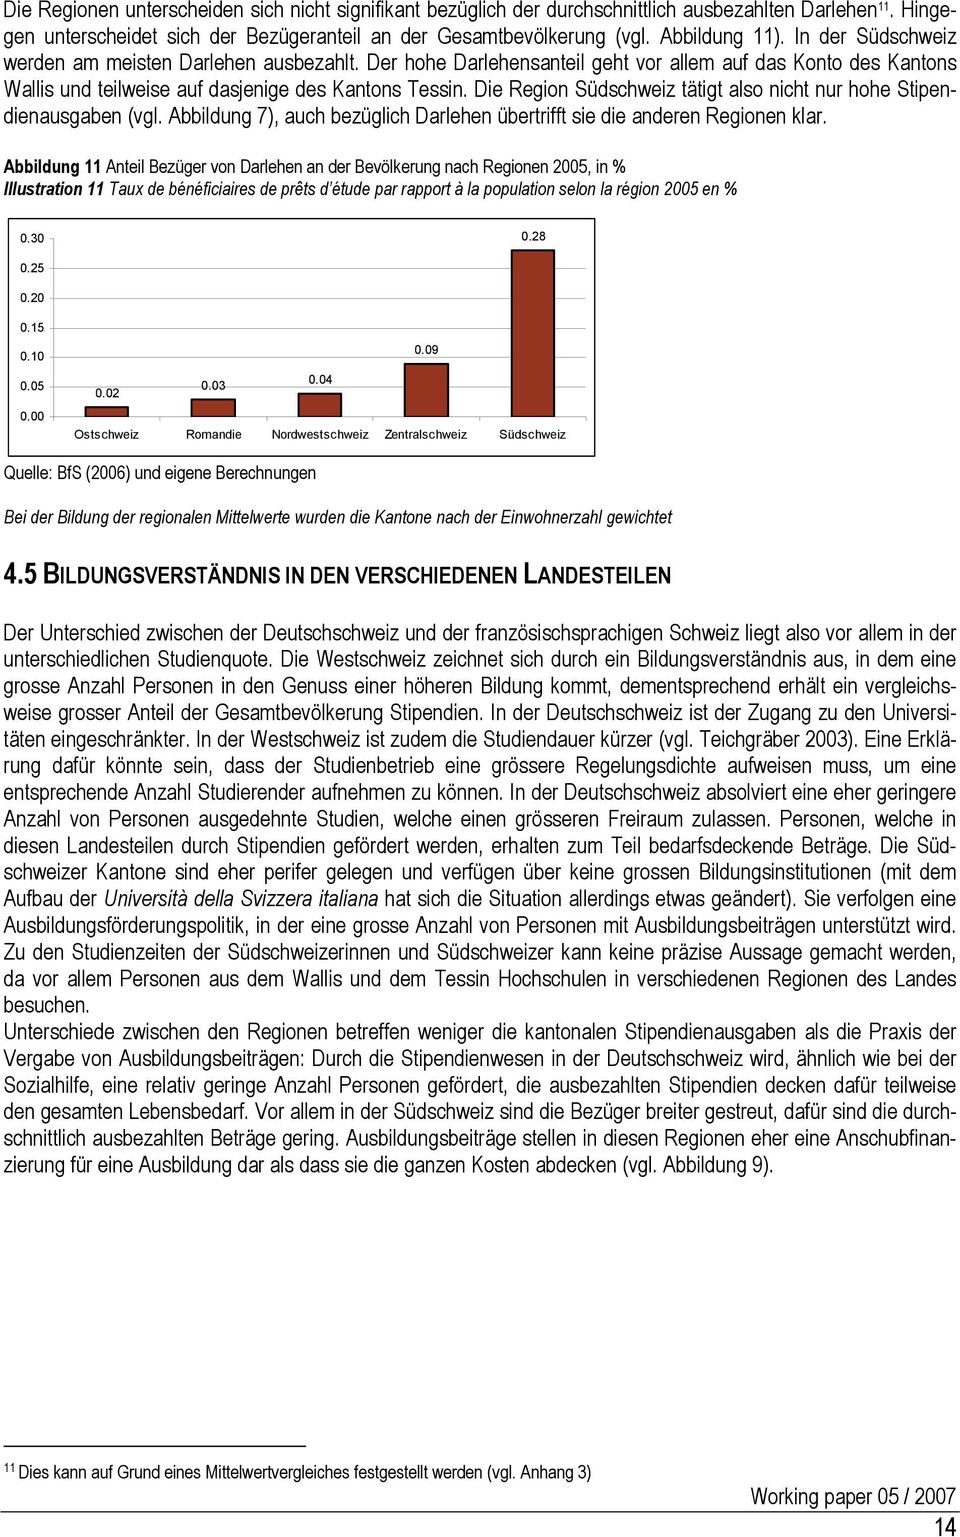 Die Region Südschweiz tätigt also nicht nur hohe Stipendienausgaben (vgl. Abbildung 7), auch bezüglich Darlehen übertrifft sie die anderen Regionen klar.